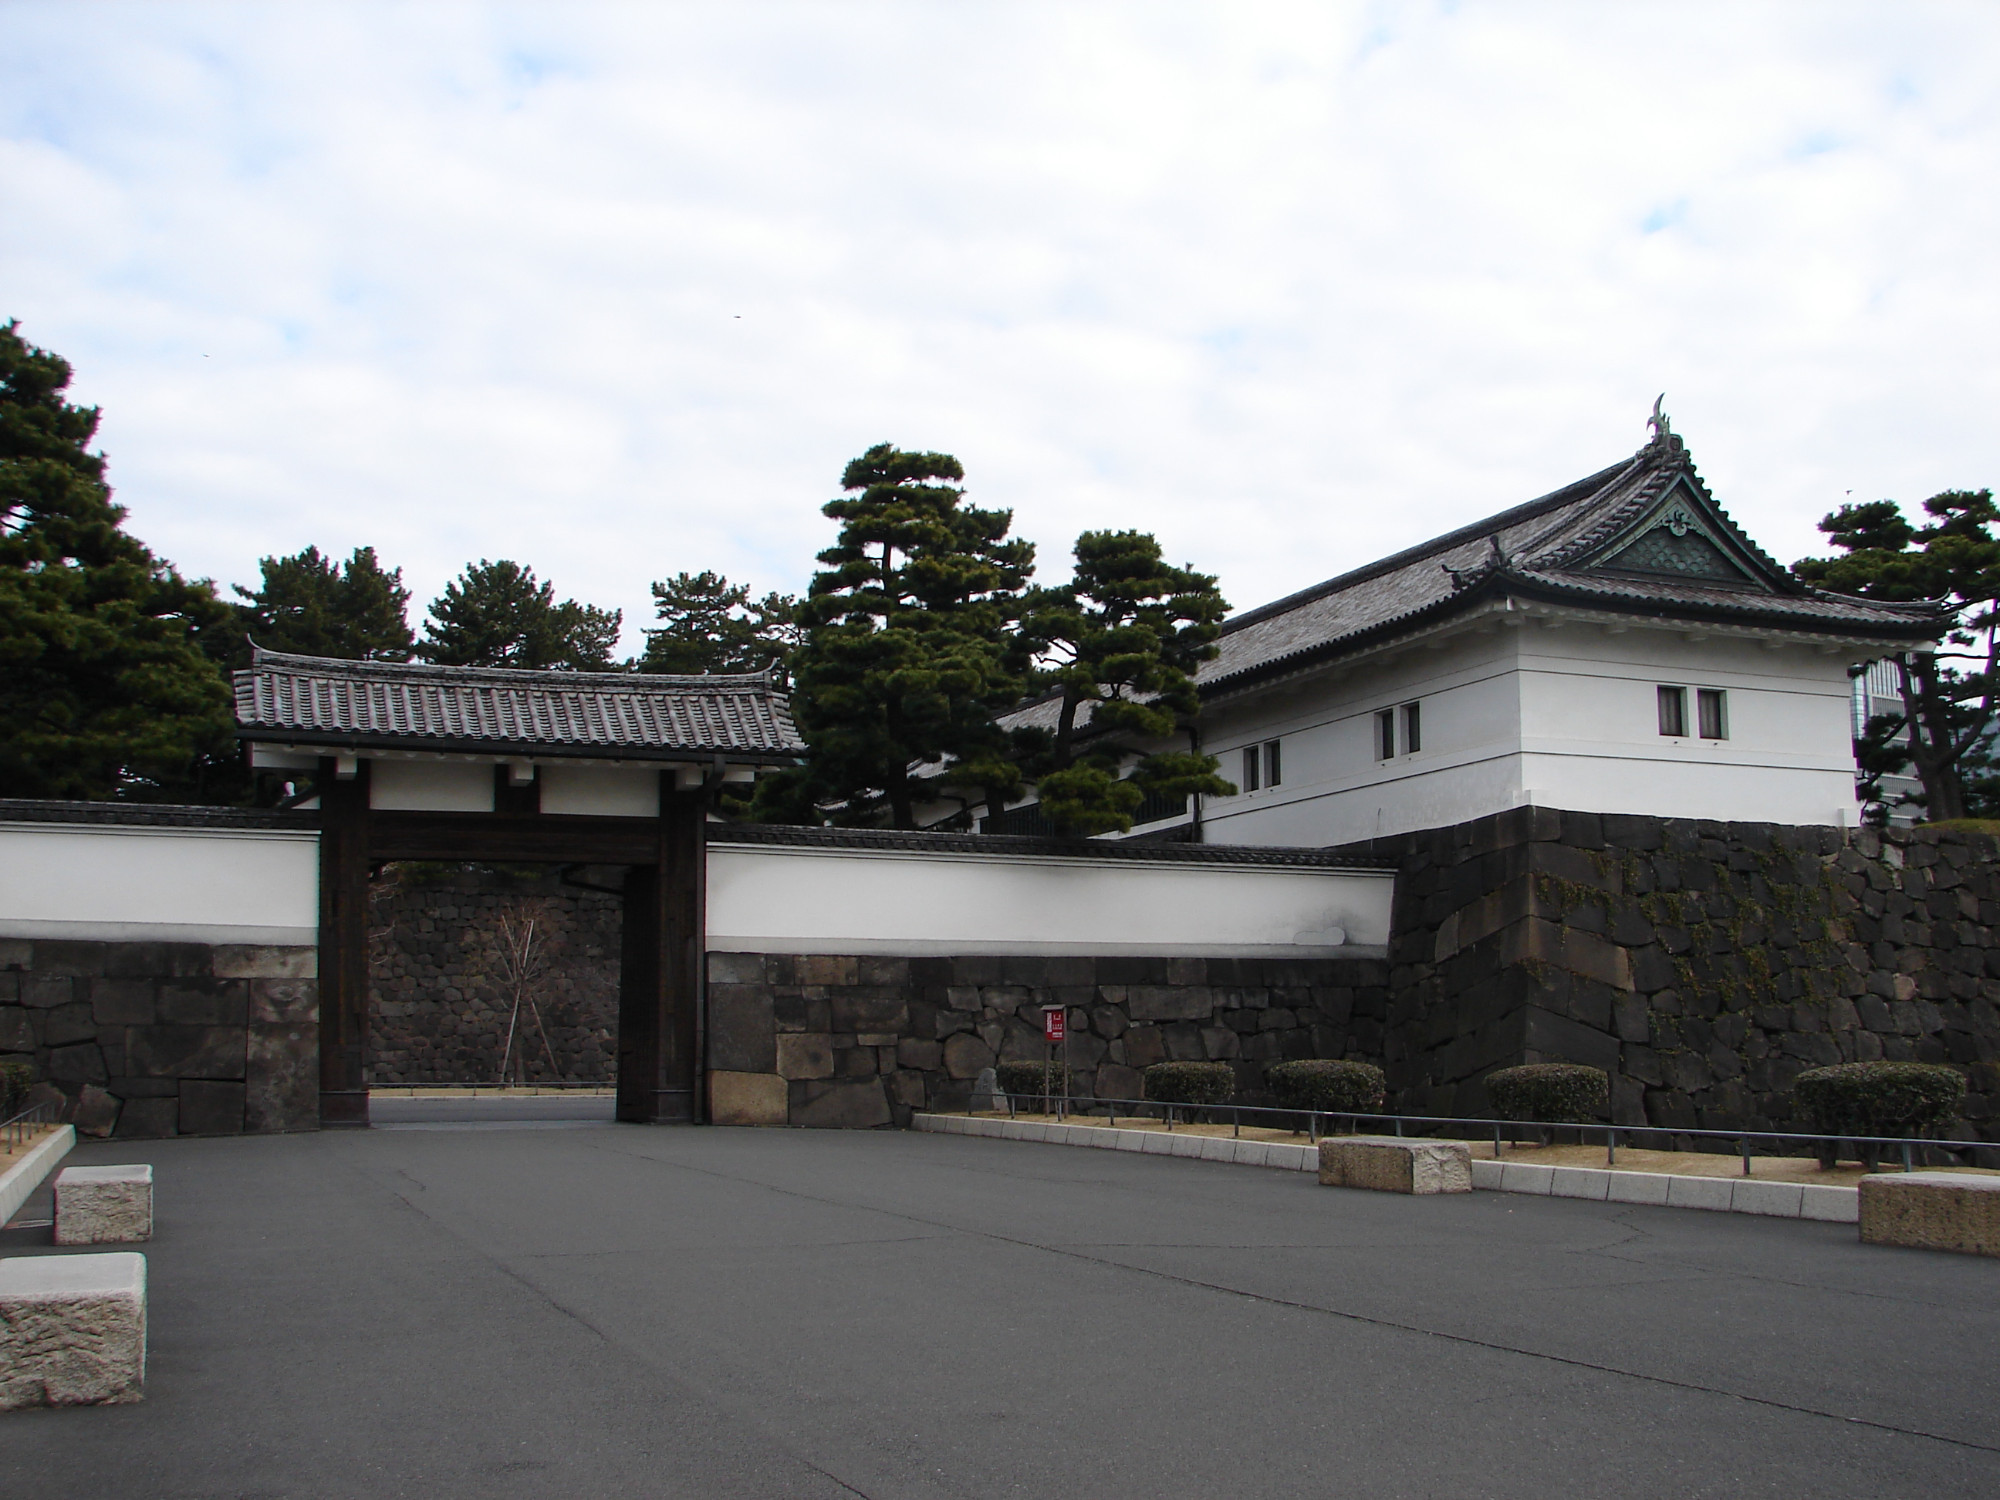 Sakurada-mon Gate, Japan